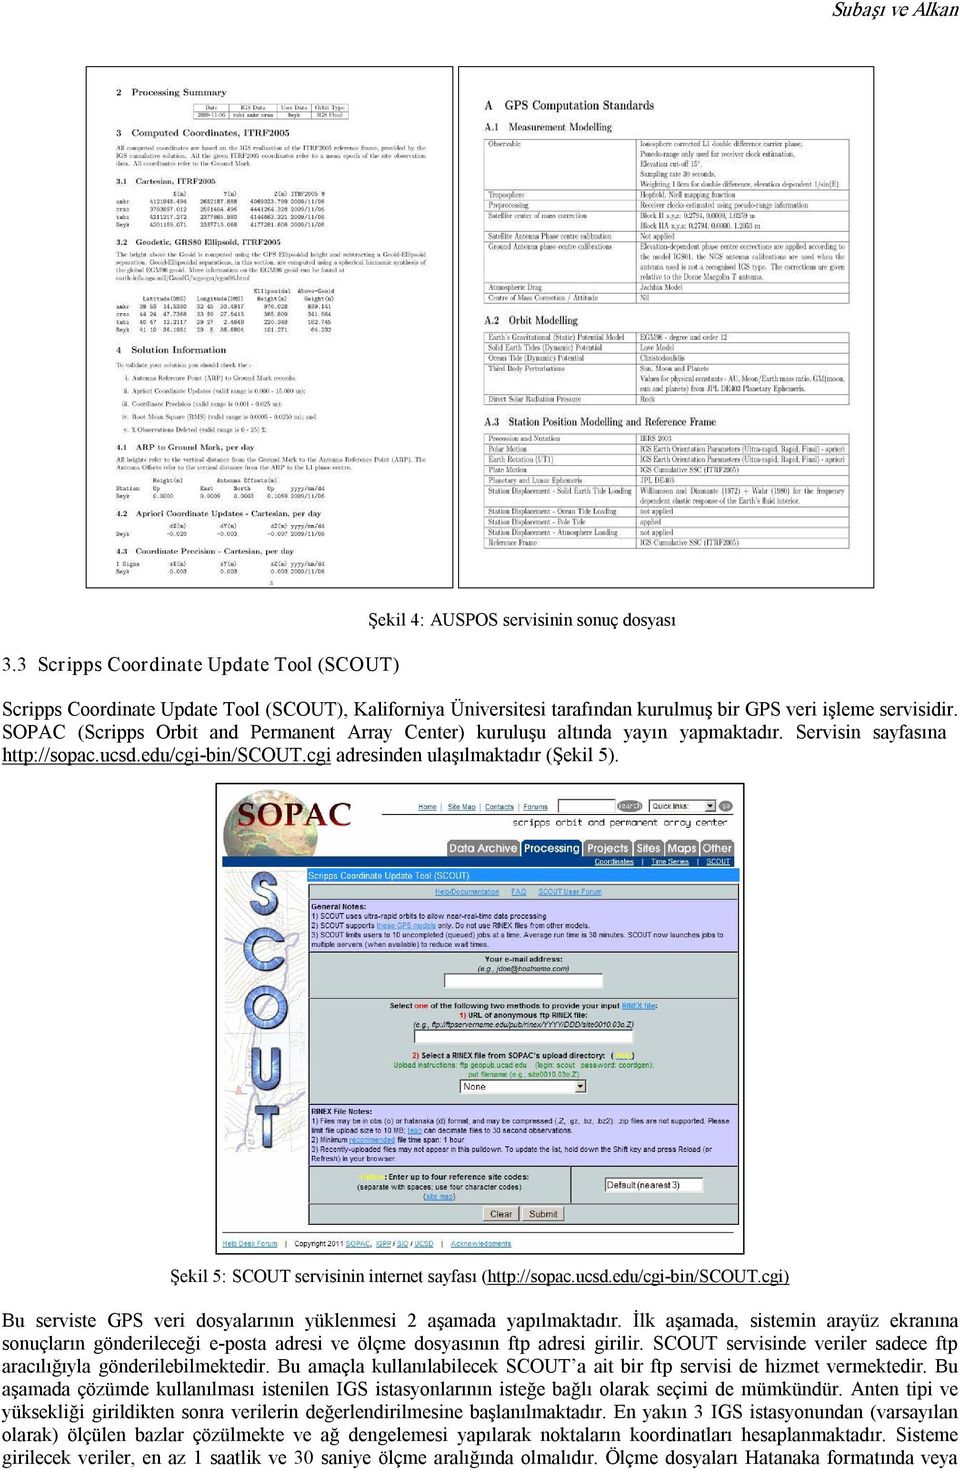 SOPAC (Scripps Orbit and Permanent Array Center) kuruluşu altında yayın yapmaktadır. Servisin sayfasına http://sopac.ucsd.edu/cgi bin/scout.cgi adresinden ulaşılmaktadır (Şekil 5).